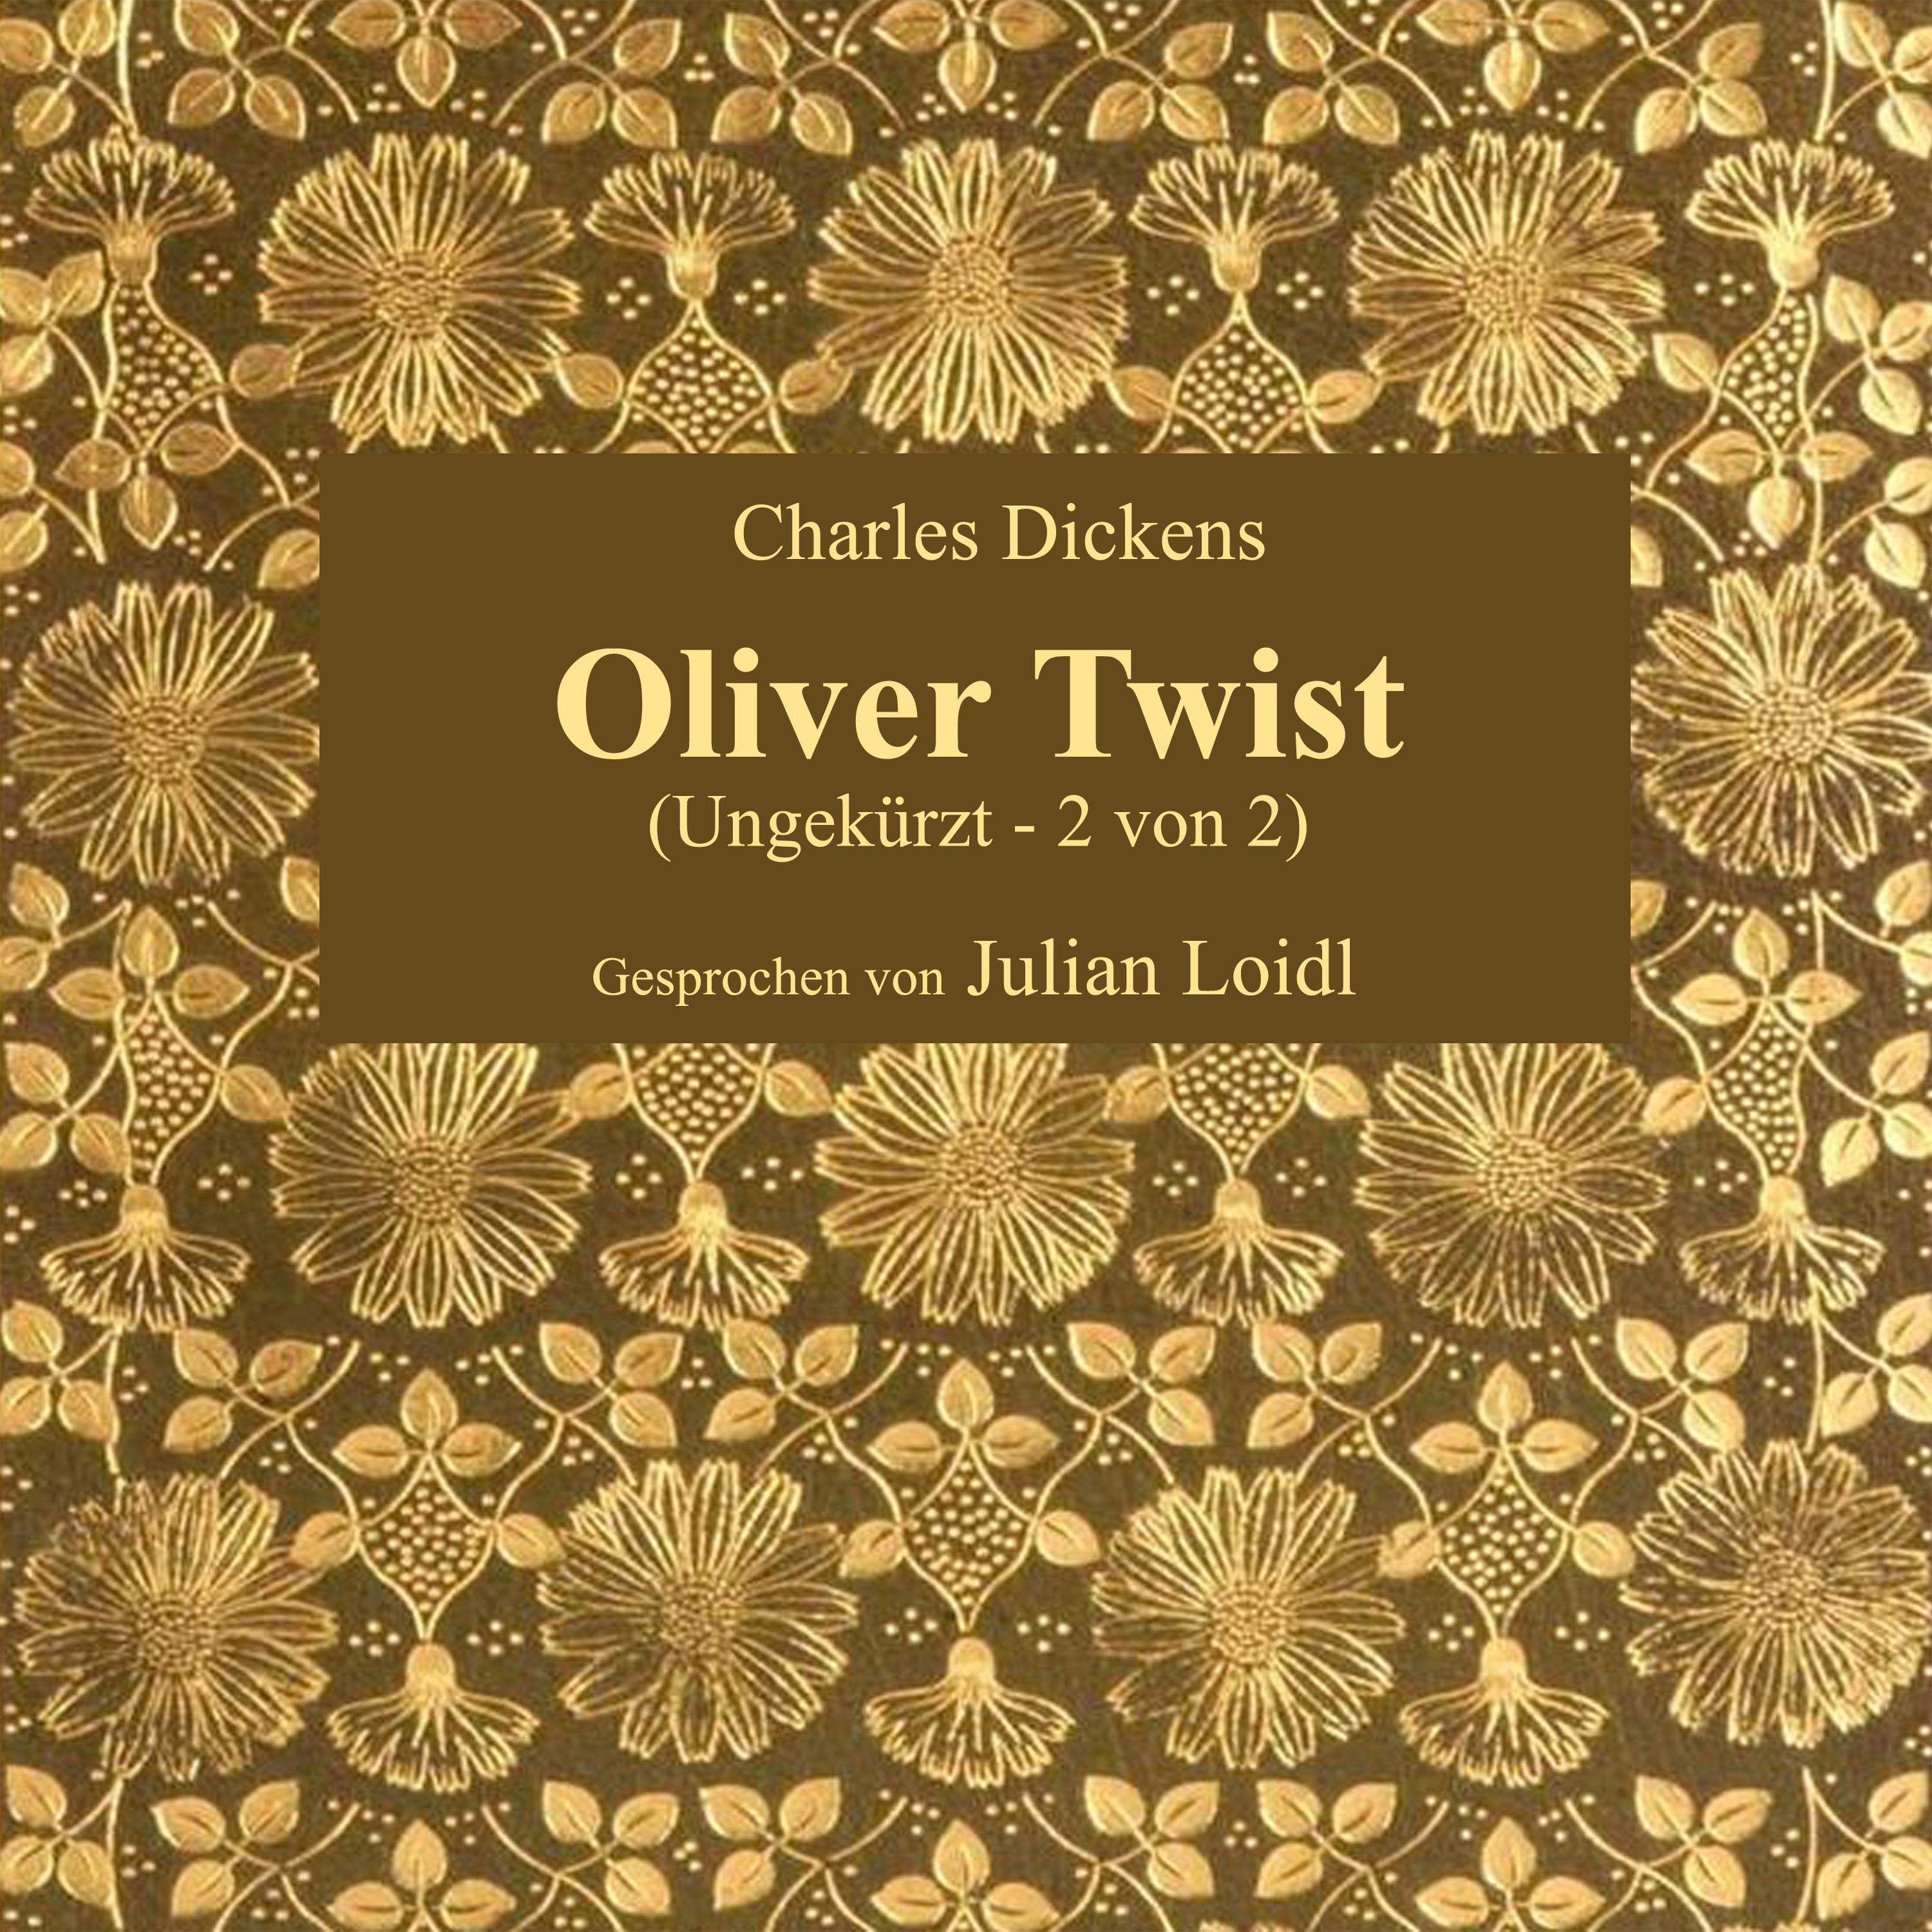 Kapitel 39: Oliver Twist (Teil 14)